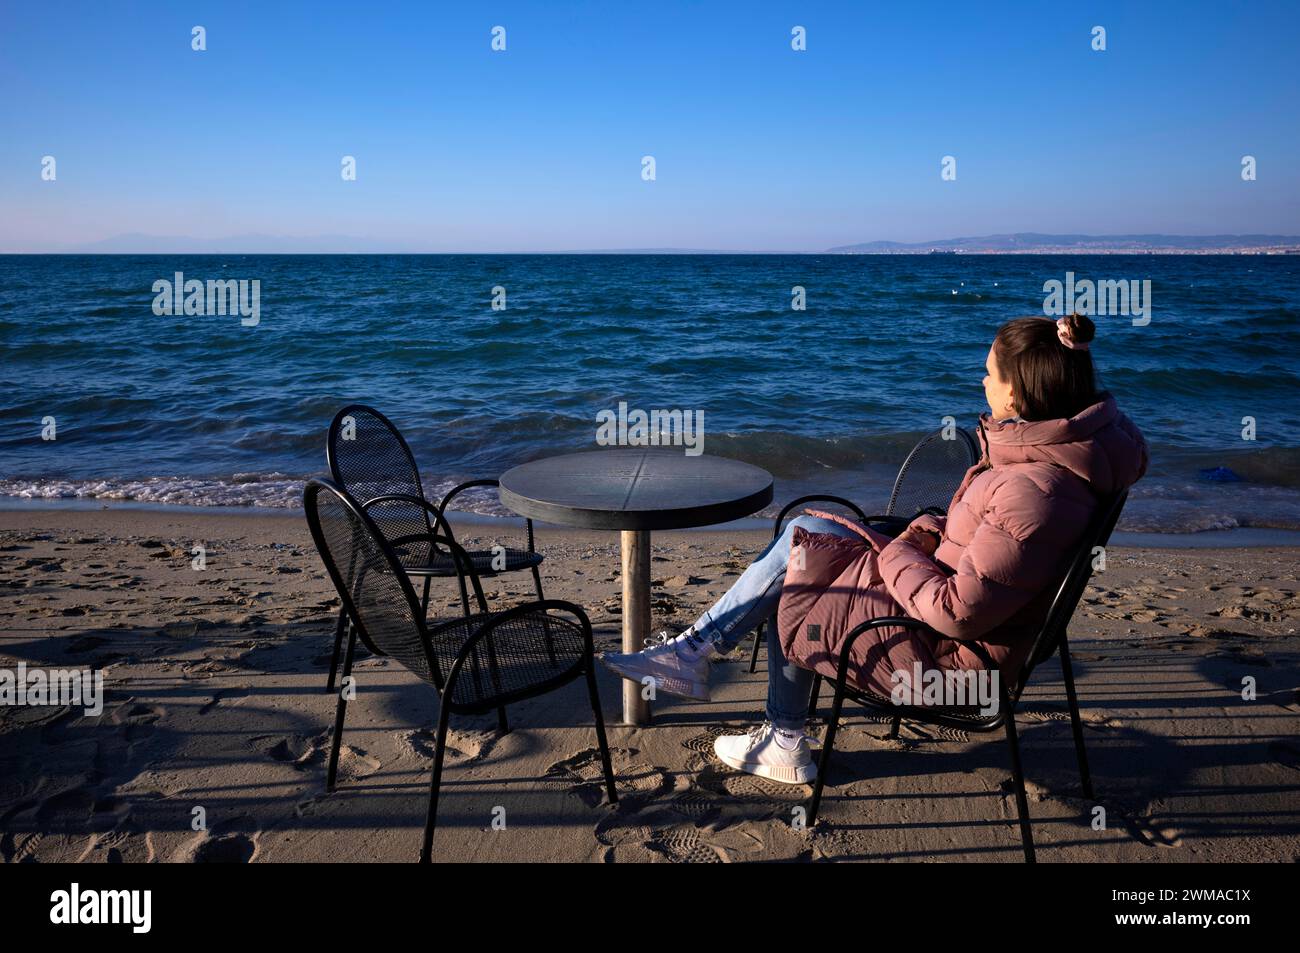 Jeune femme regardant la mer, seule, seule, manteau, table et chaises, bar de plage, plage, Peraia, aussi Perea, Thessalonique, Macédoine, Grèce Banque D'Images